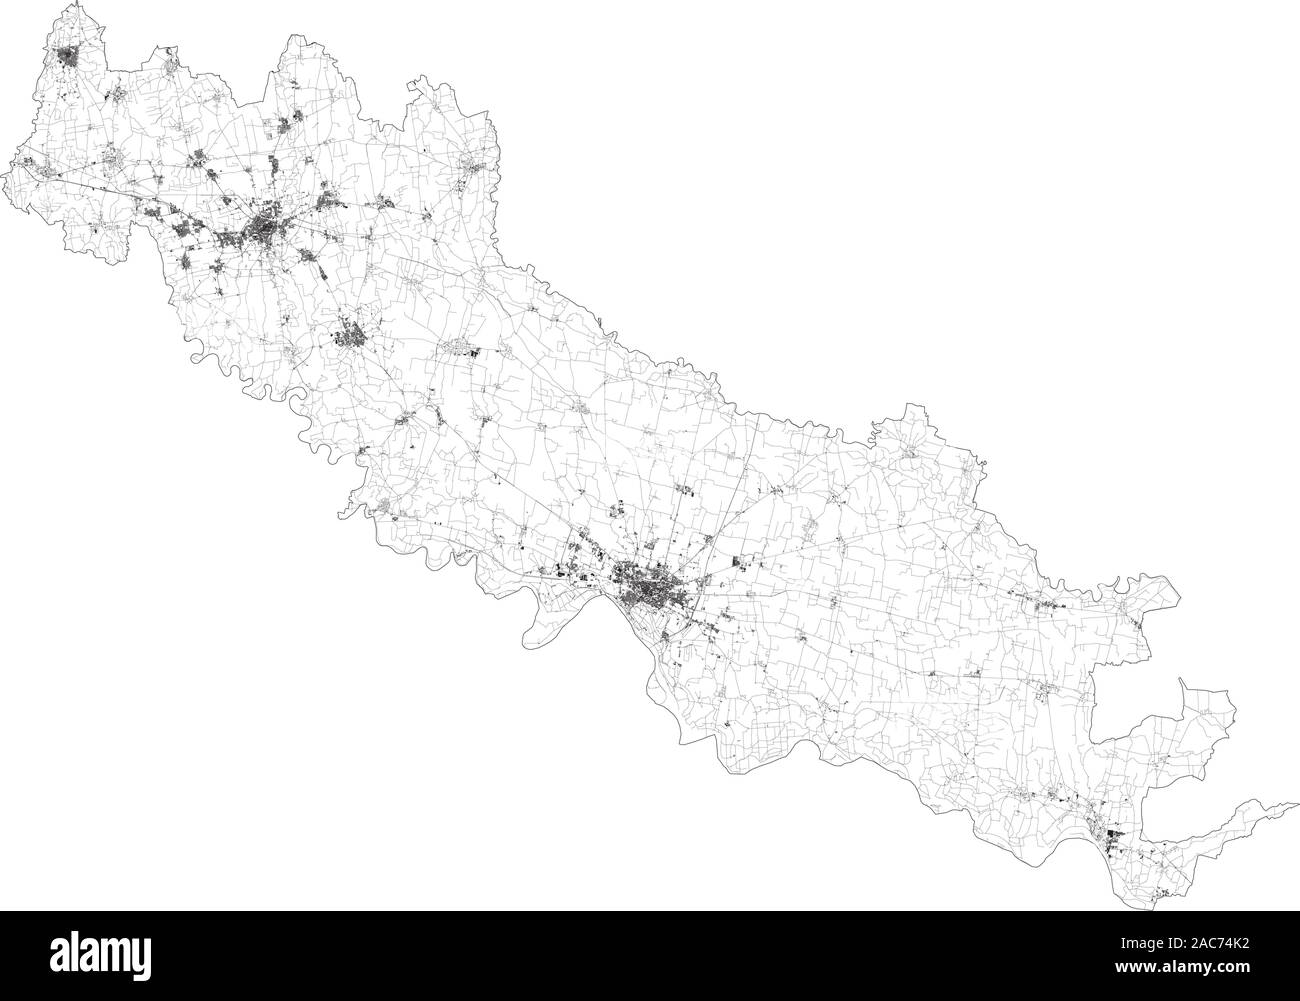 Sat-Karte der Provinz Cremona, Städte und Straßen, Gebäude und Straßen der Umgebung. Lombardei, Italien. Karte Straßen, Ringstraßen Stock Vektor